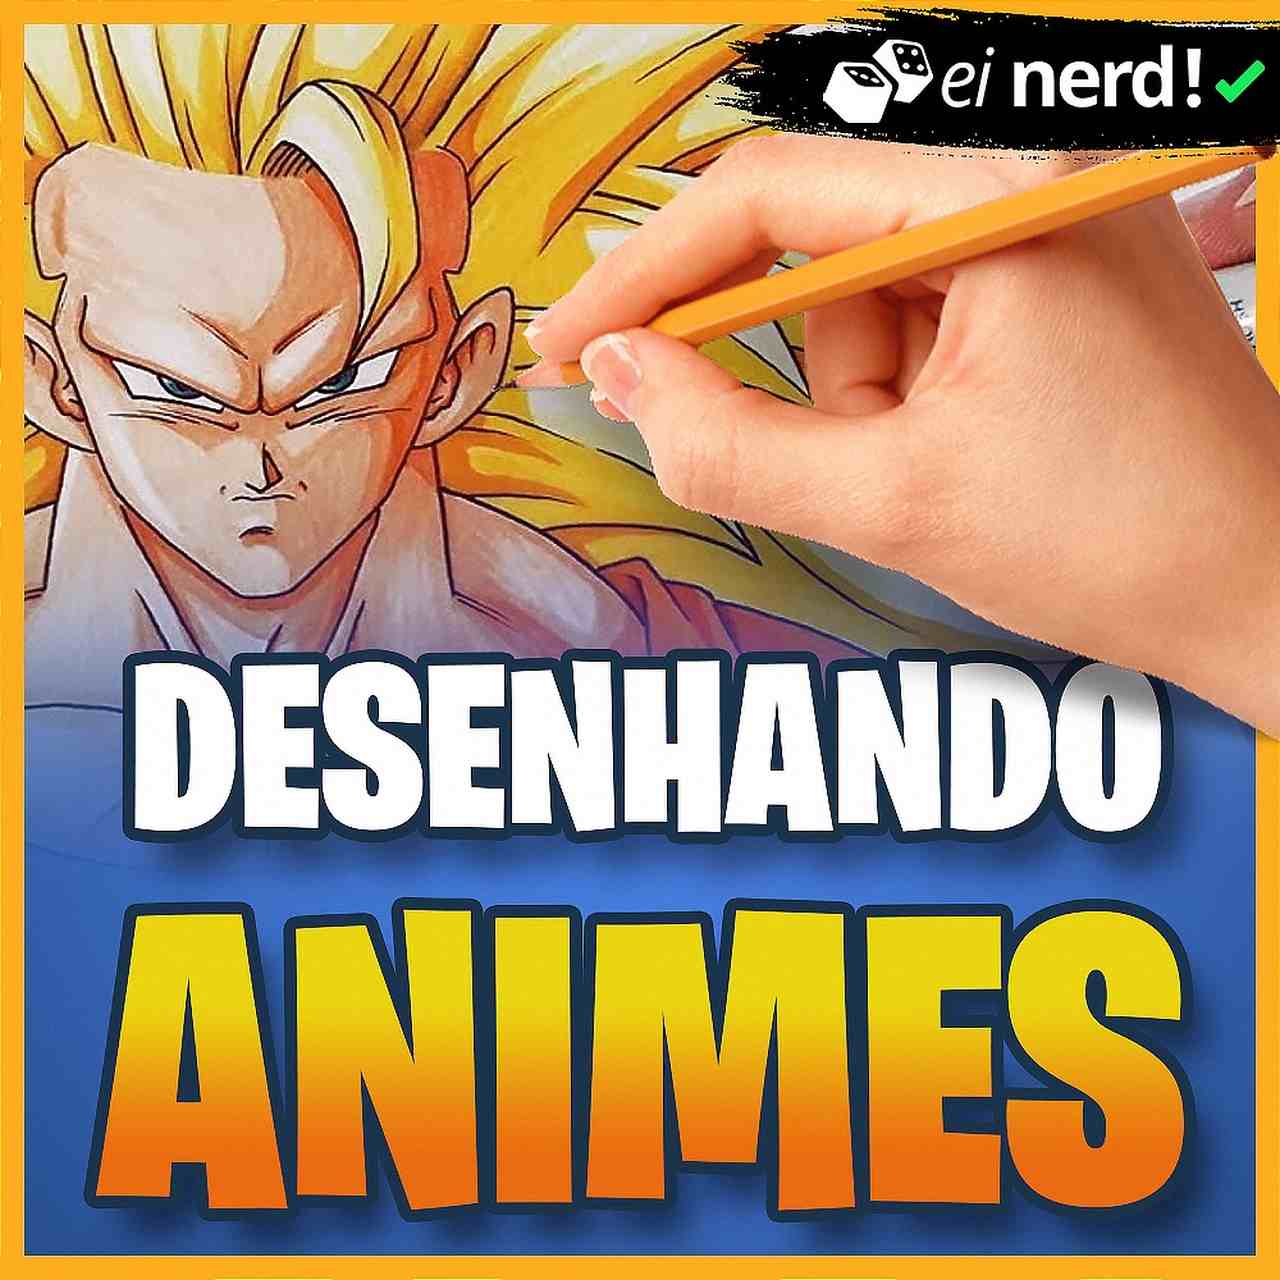 Desenhando Animes  Download Cursos Grátis - Baixe no melhor servidor!  GDrive